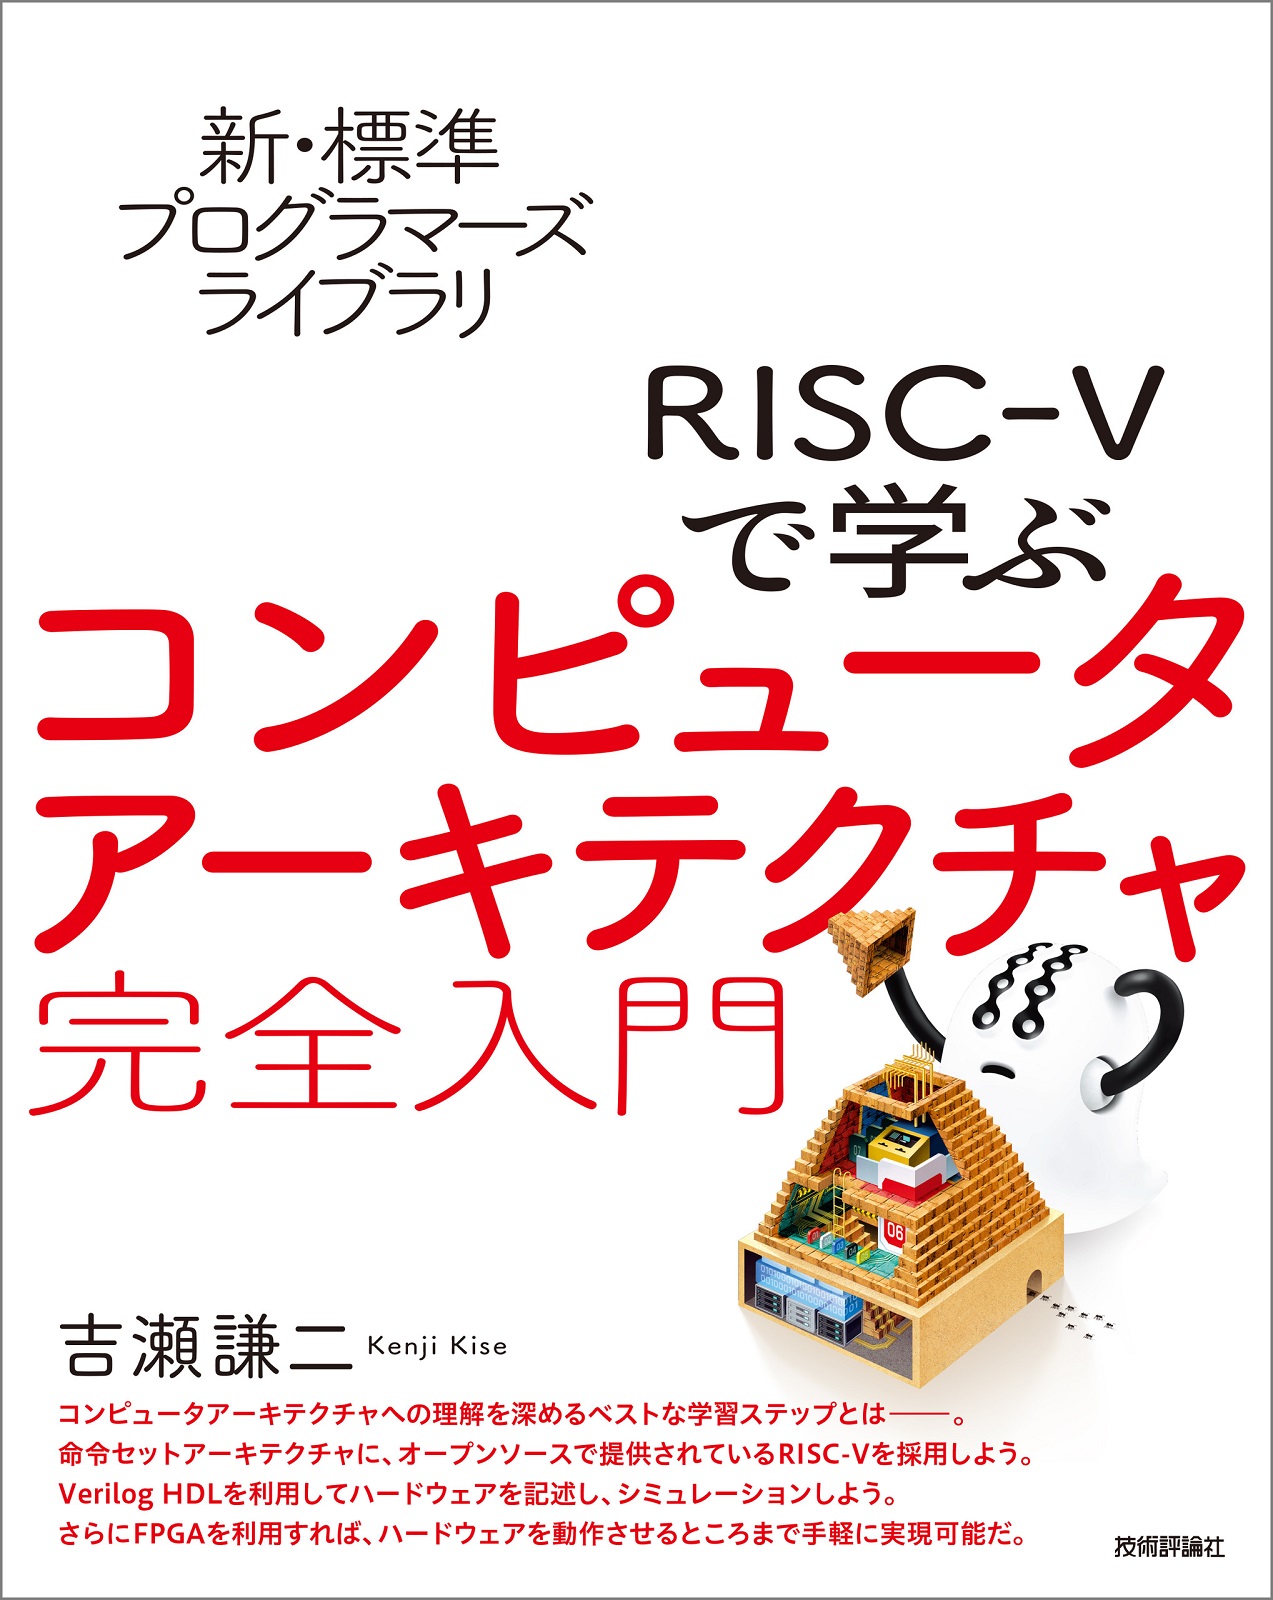 新・標準プログラマーズライブラリ RISC-Vで学ぶコンピュータアーキテクチャ 完全入門